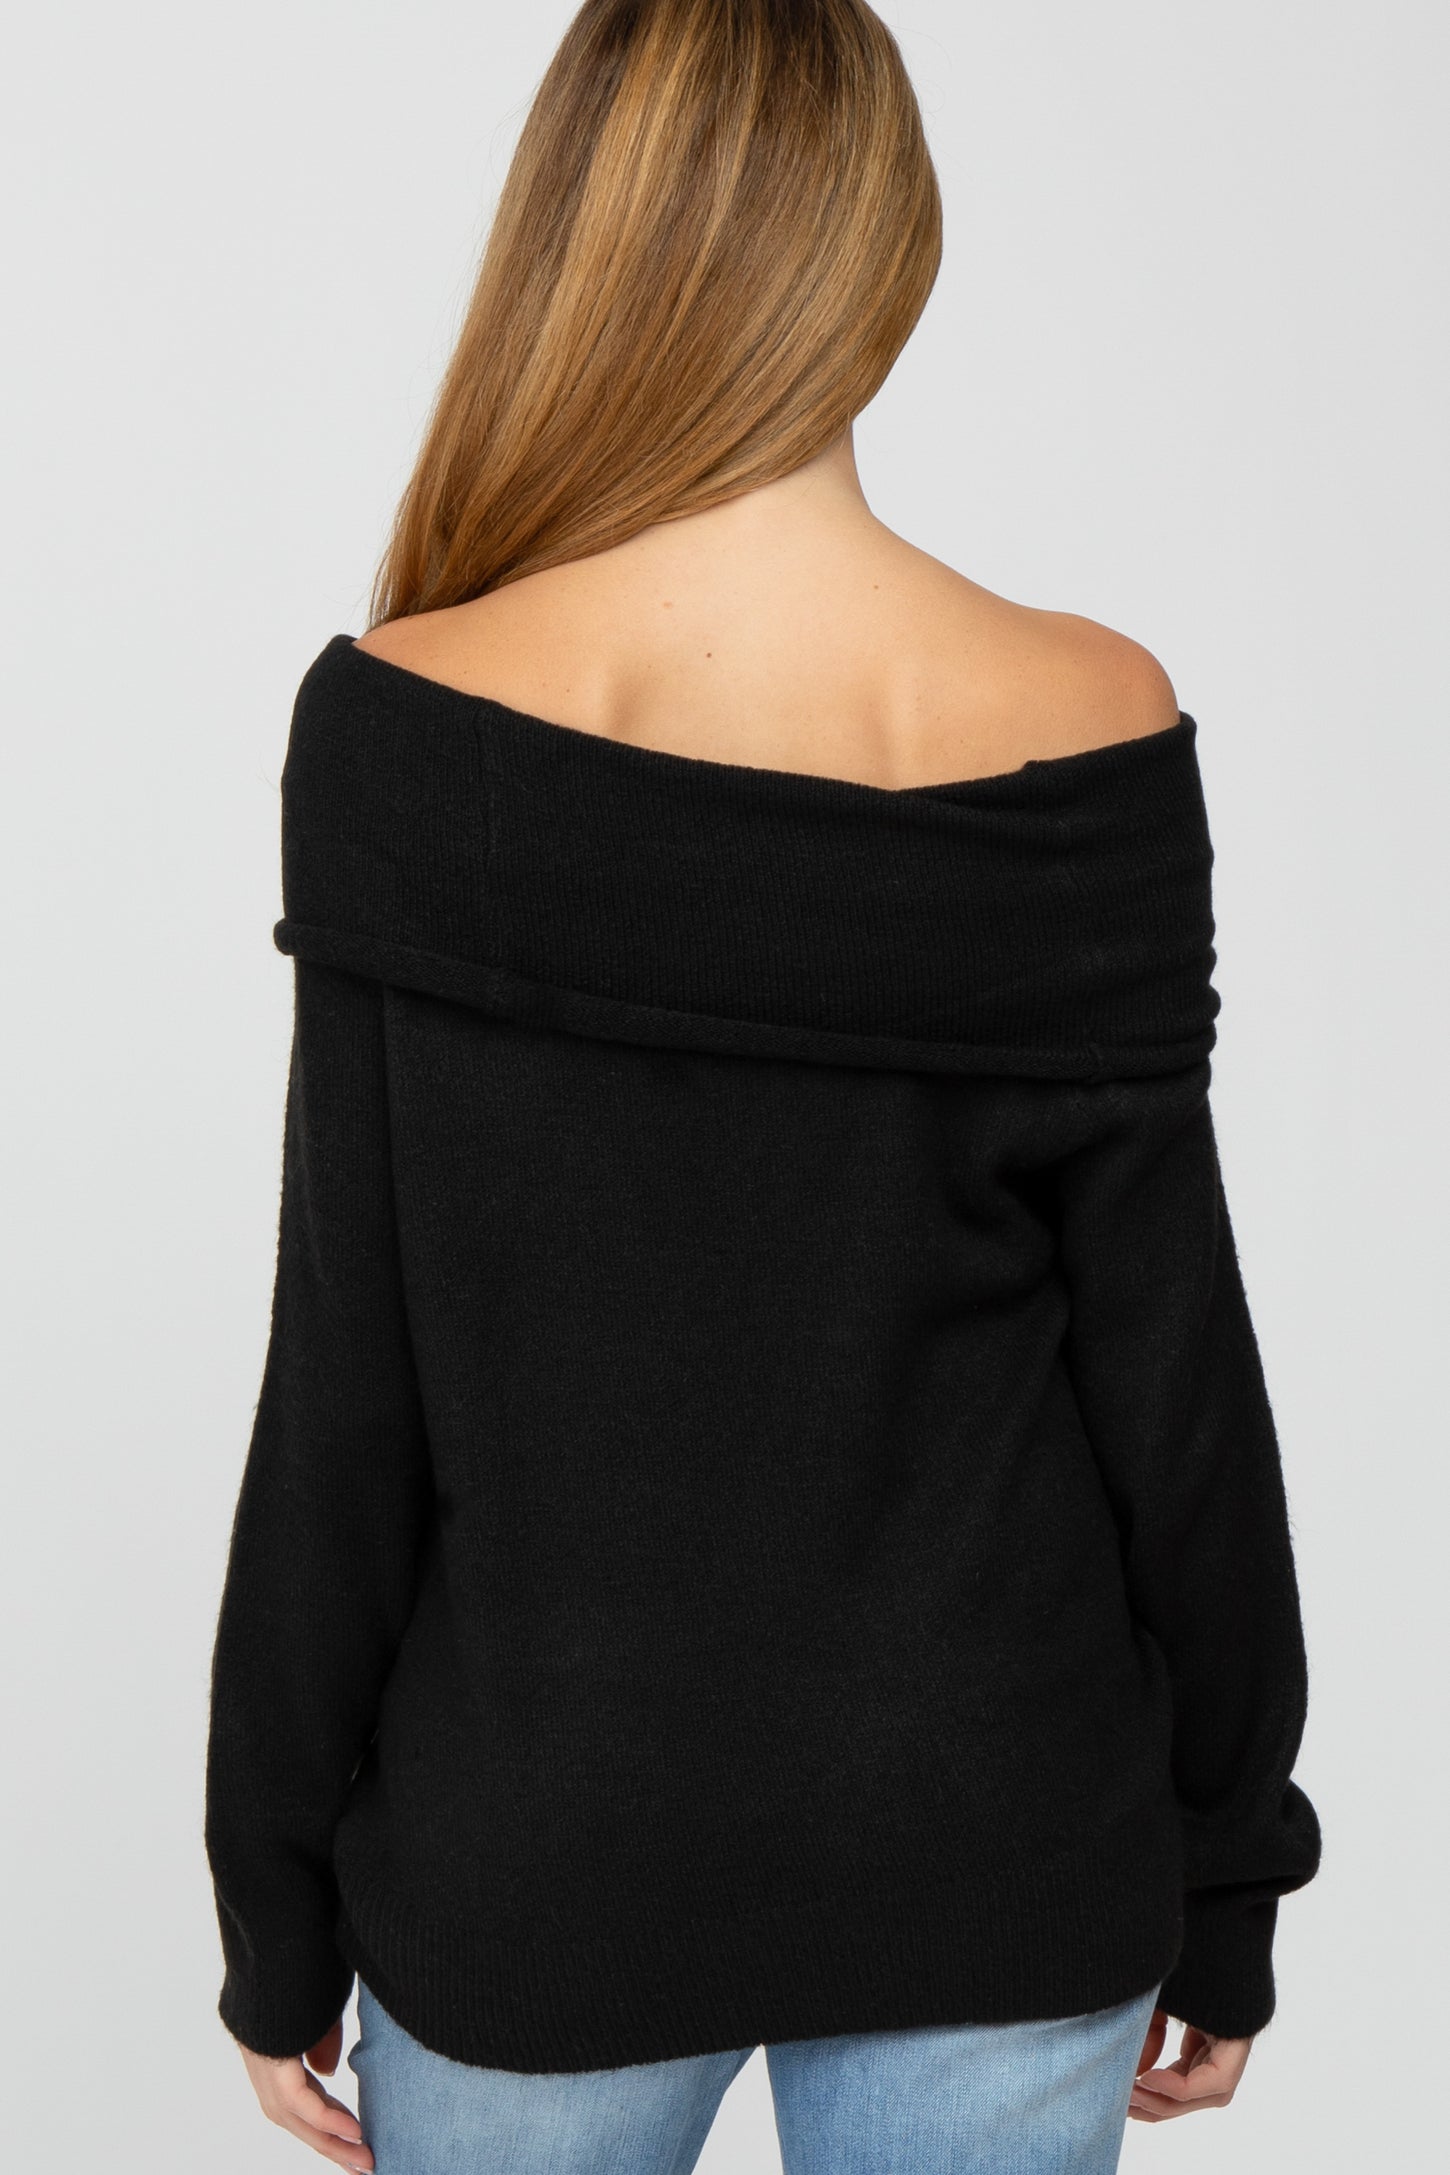 Black Off Shoulder Foldover Maternity Sweater